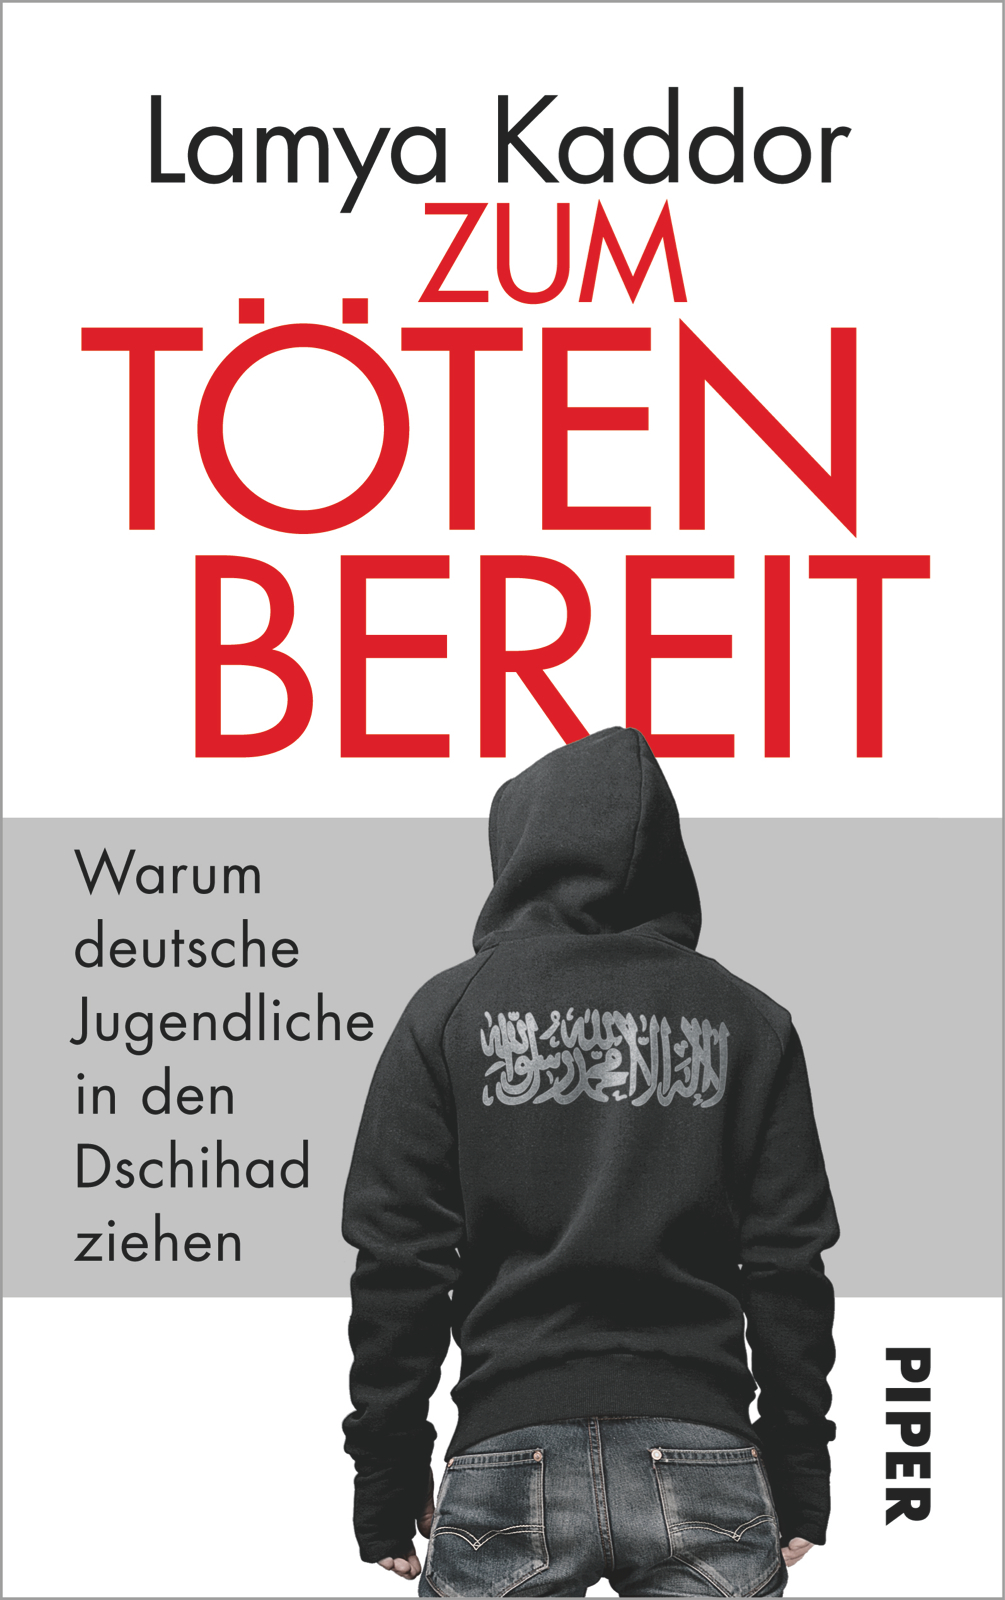 Buchcover Lamya Kaddor: "Zum Töten bereit. Warum deutsche Jugendliche in den Dschihad ziehen" im Piper Verlag